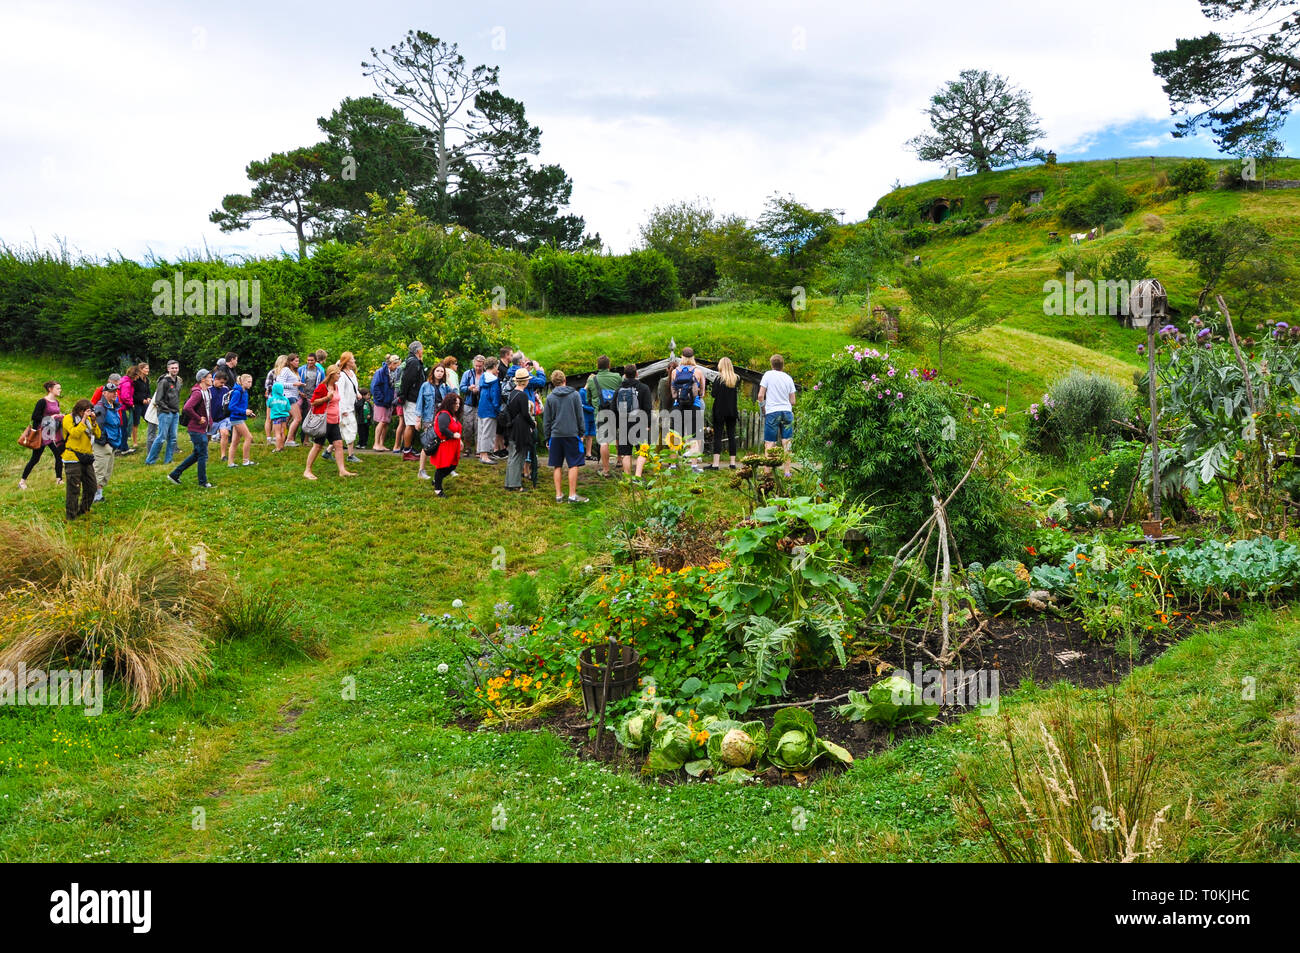 Hobbiton Movie set - Location per il Signore degli Anelli e Lo Hobbit film. Grande numero di visitatori, molte persone. Regione di Waikato in Nuova Zelanda Foto Stock